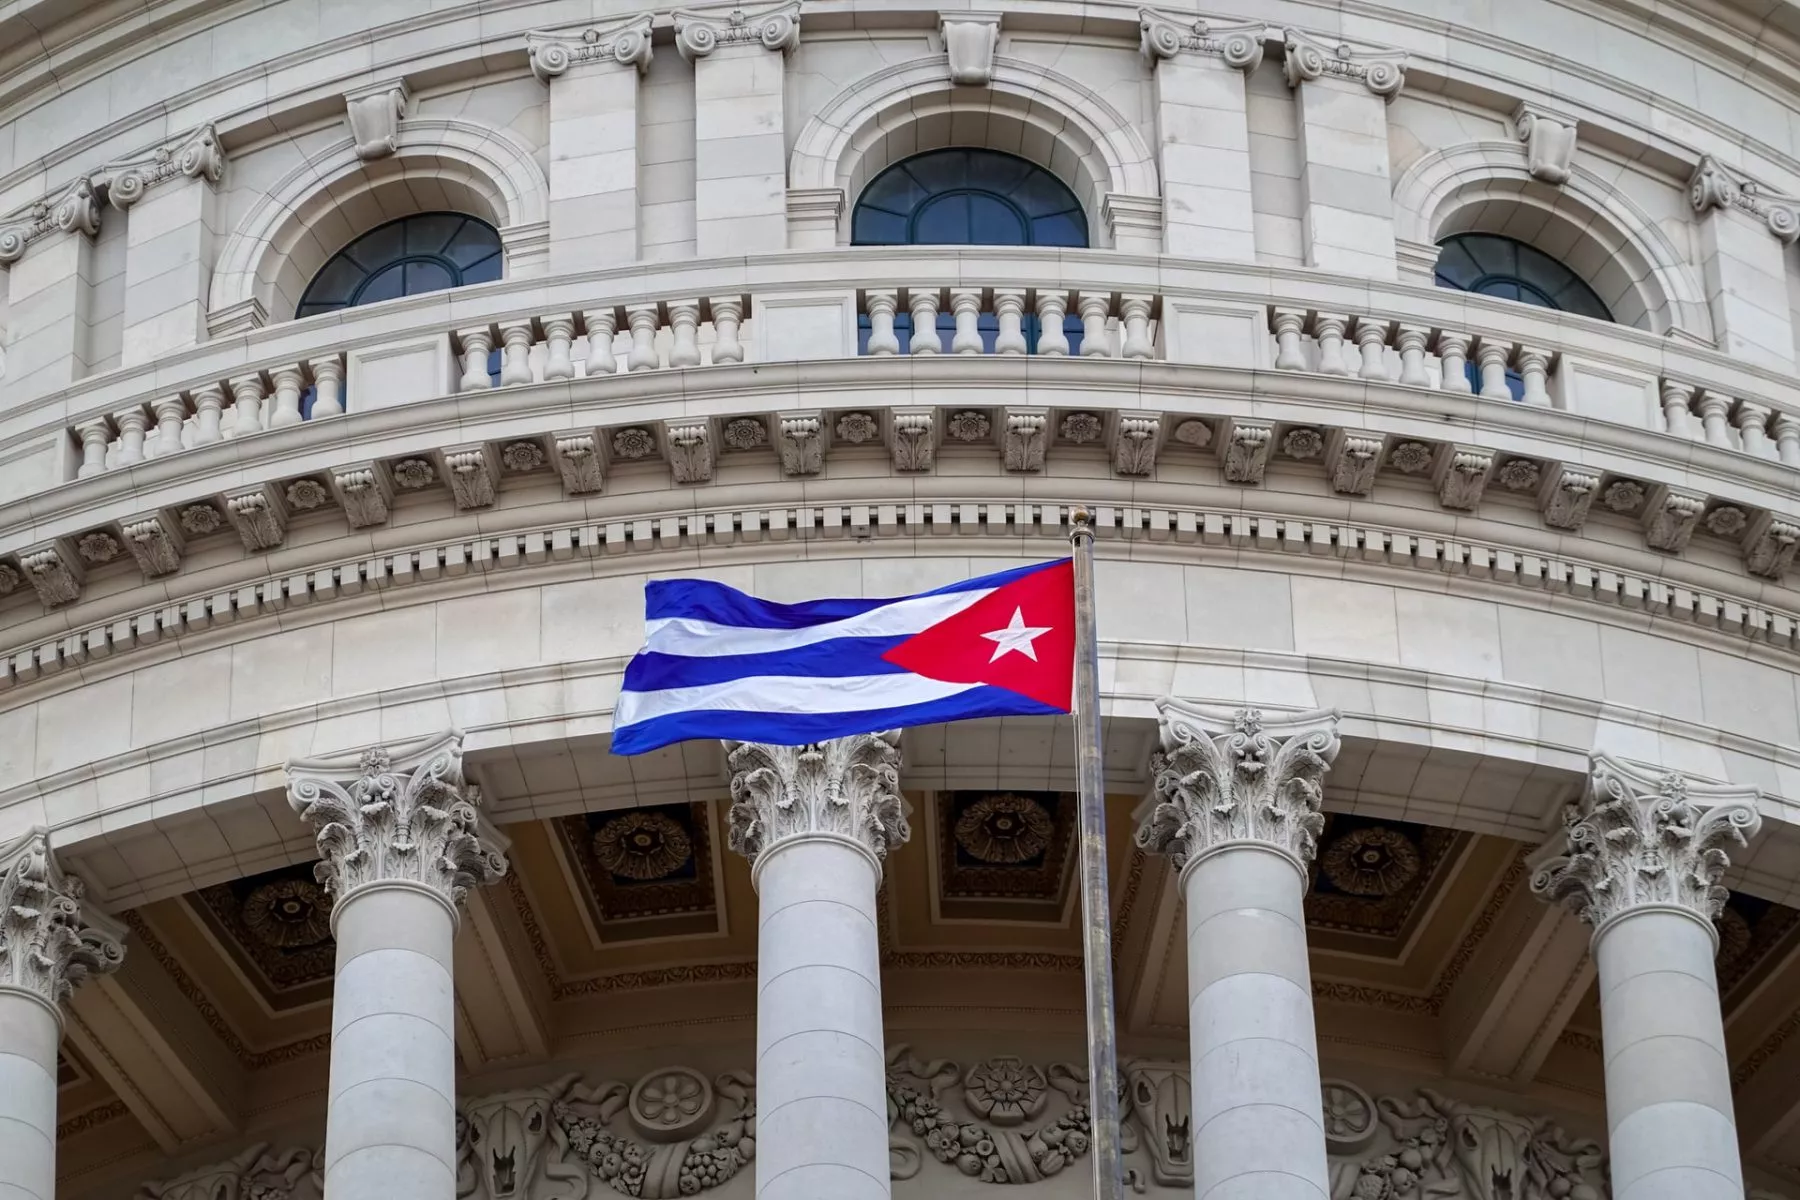 Regering van Cuba zegt dat het crypto zal erkennen en reguleren